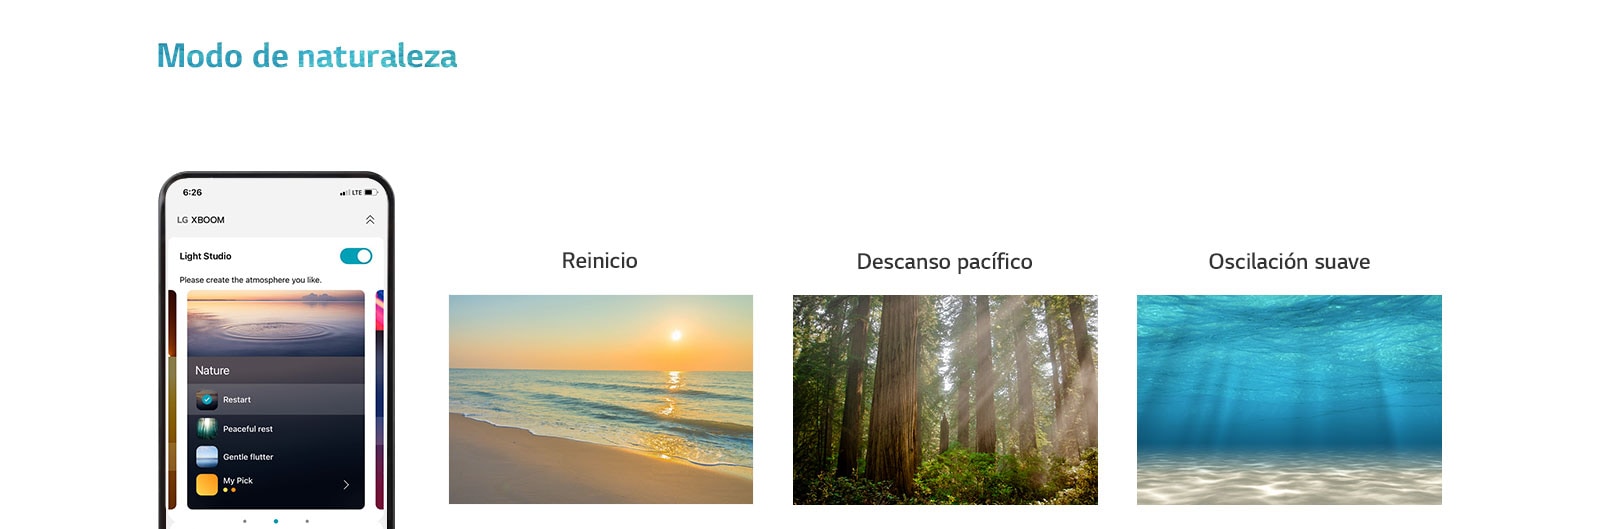 Imagen de teléfono móvil con la aplicación en pantalla en modo de naturaleza. Una imagen de una playa al atardecer. Una imagen de un bosque iluminado por el sol. Imagen de la luz que brilla bajo el mar transparente.